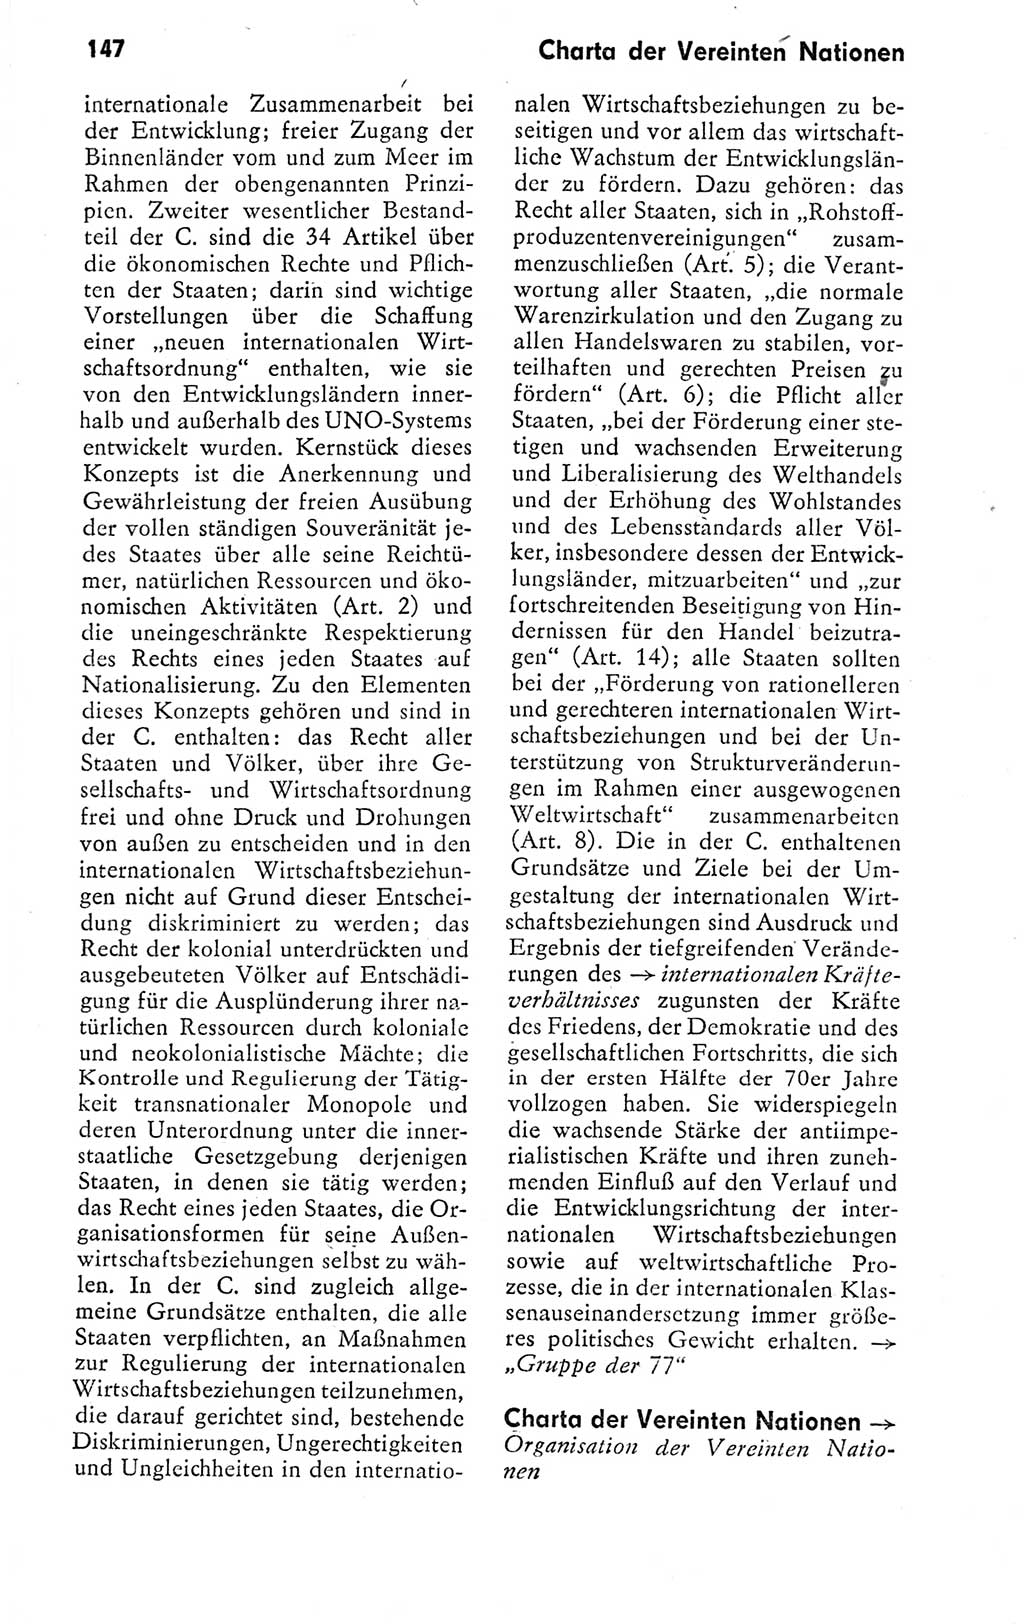 Kleines politisches Wörterbuch [Deutsche Demokratische Republik (DDR)] 1978, Seite 147 (Kl. pol. Wb. DDR 1978, S. 147)